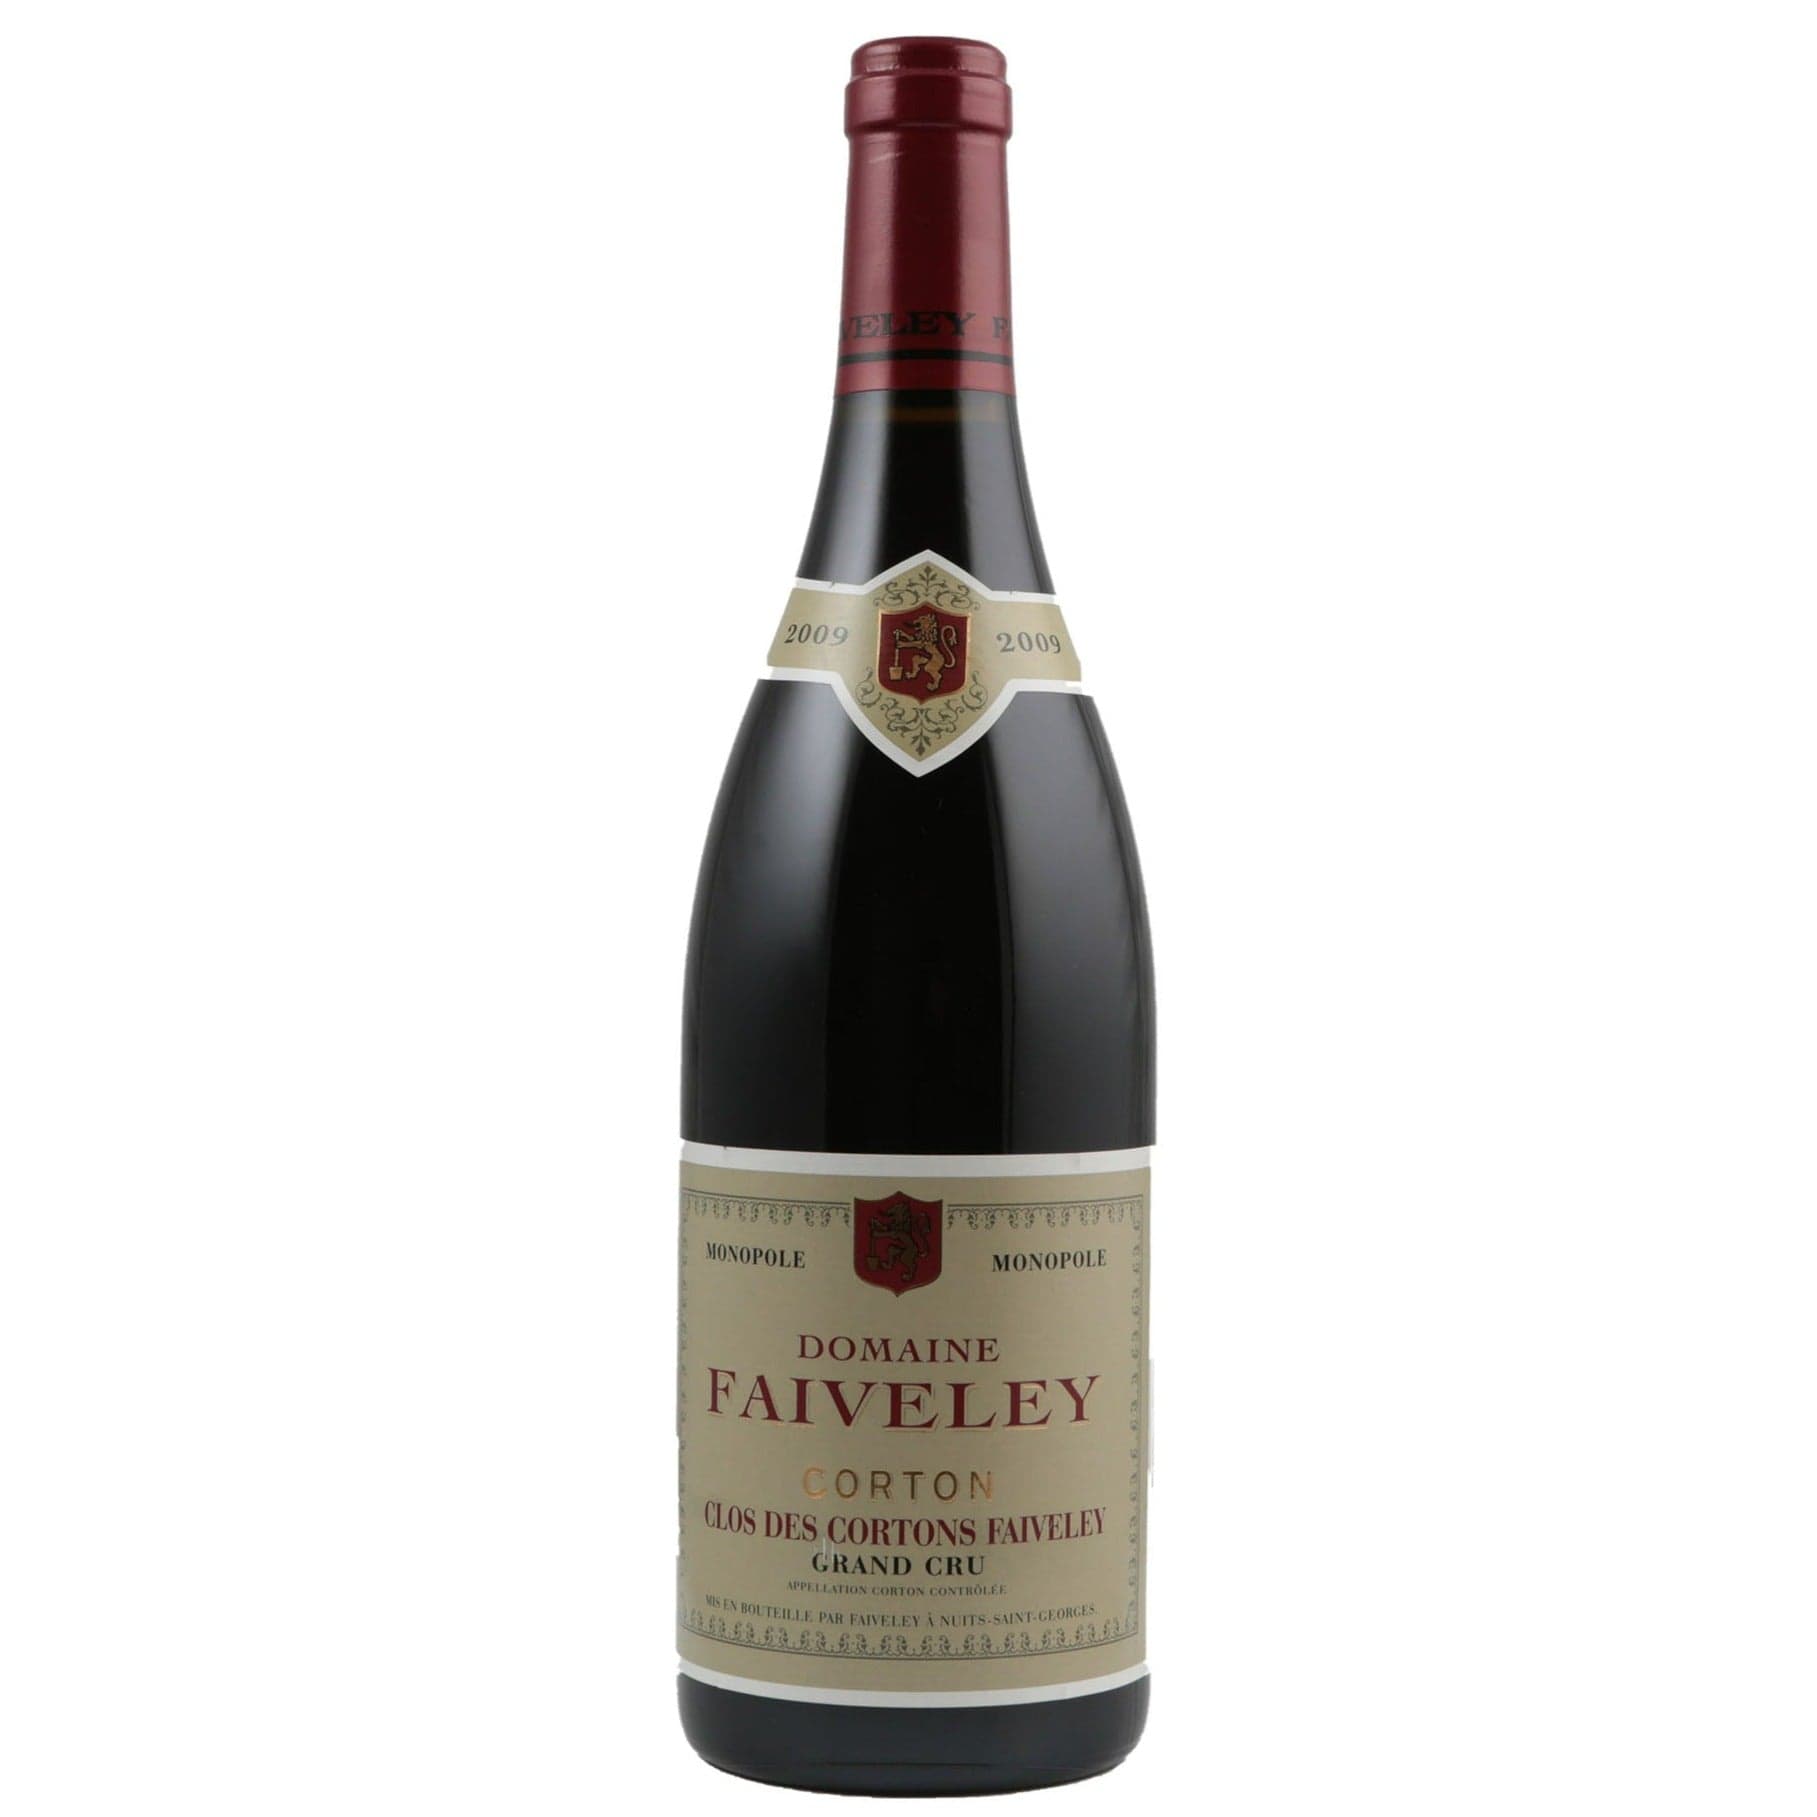 Single bottle of Red wine Dom. Faiveley, Clos des Cortons Monopole Grand Cru, Corton Rouge, 2009 100% Pinor Noir